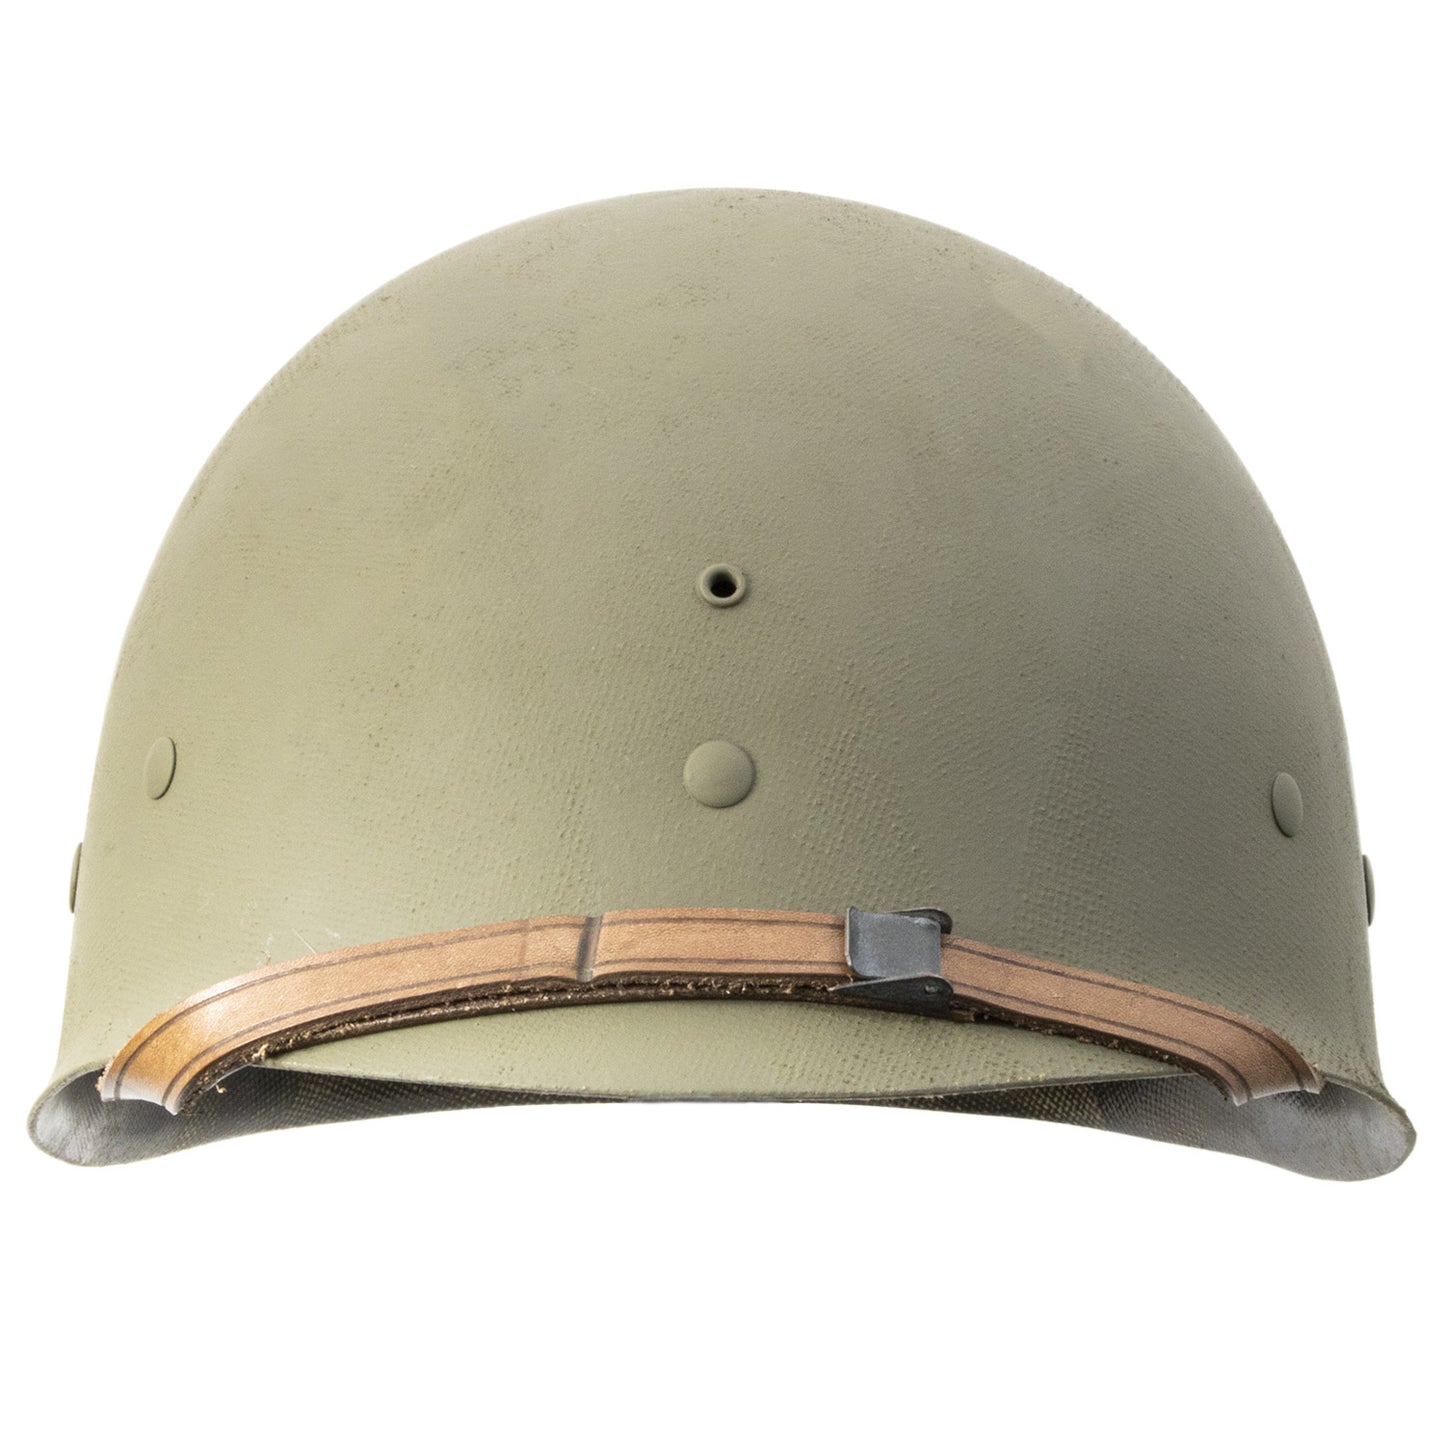 Liner fibre infanterie d'origine Allemande pour casque US M1 vue de face